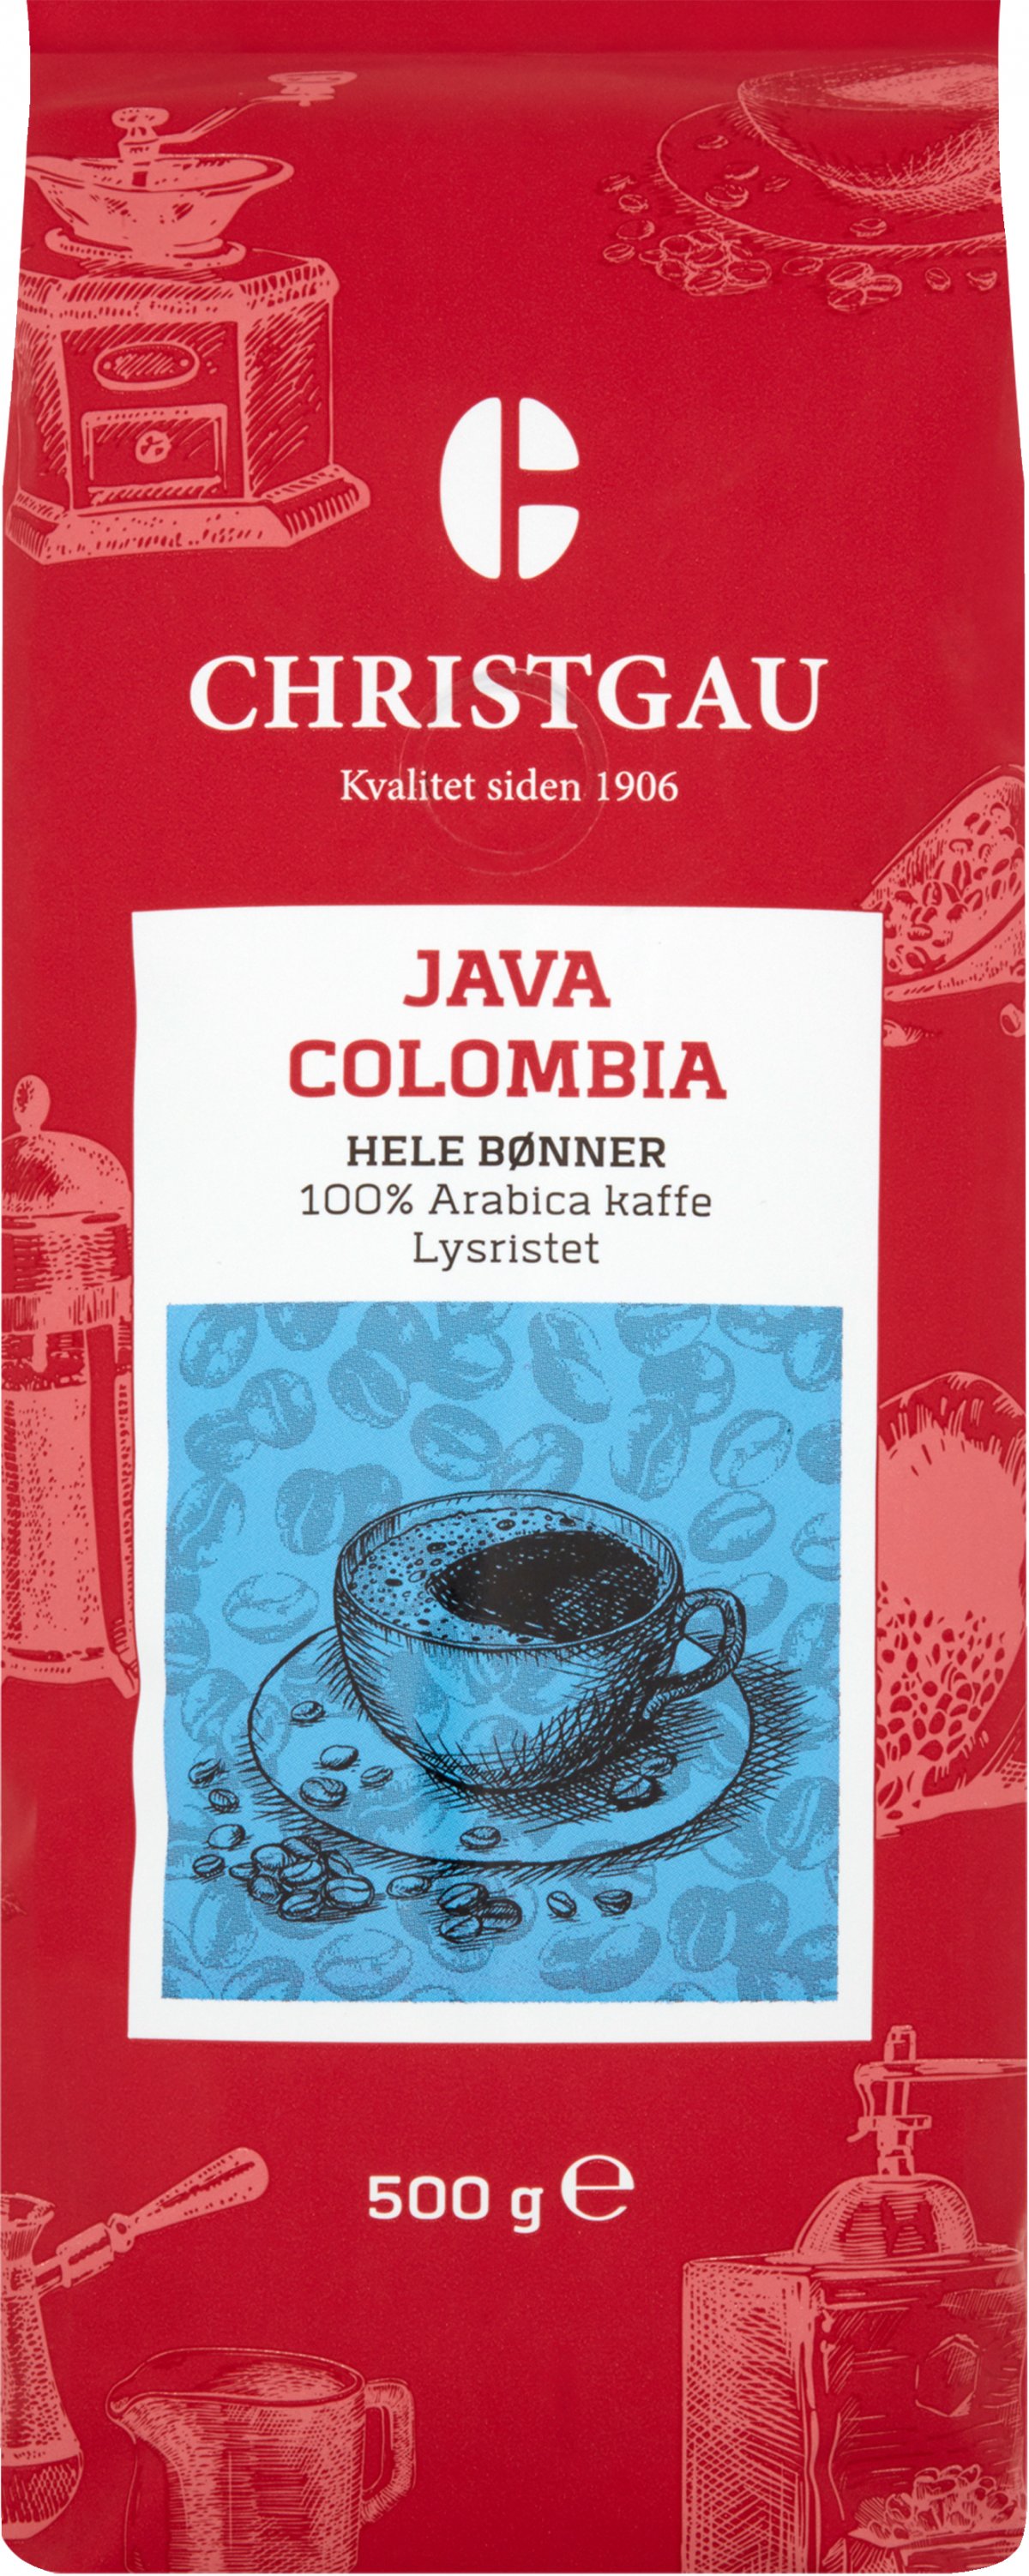 Orient der ovre Kollegium Christgau Kaffe Java Colombia Hele Bønner 500 g. - HELE KAFFEBØNNER - VIN  MED MERE .DK